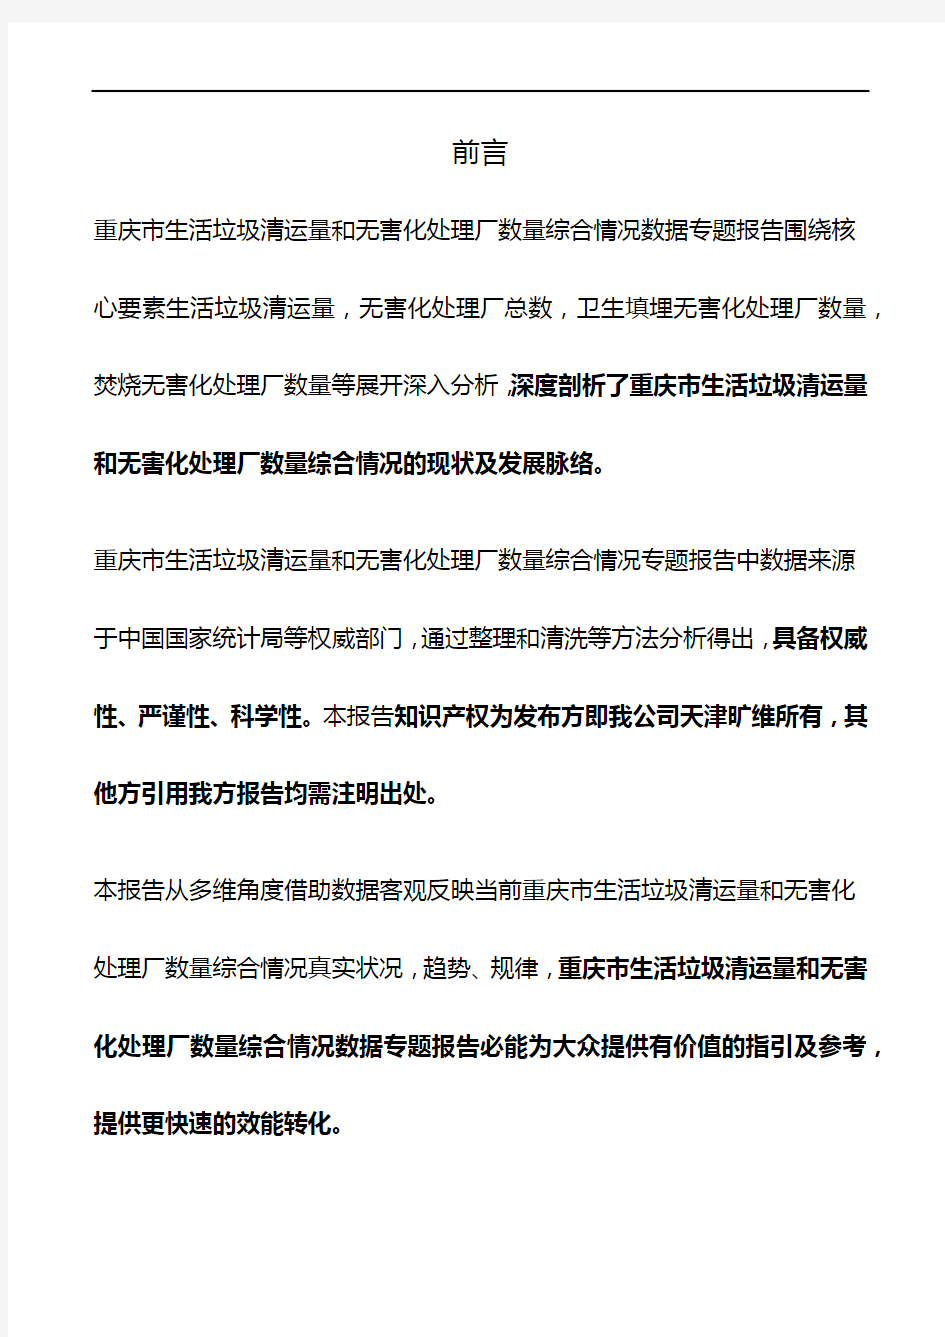 重庆市生活垃圾清运量和无害化处理厂数量综合情况3年数据专题报告2019版